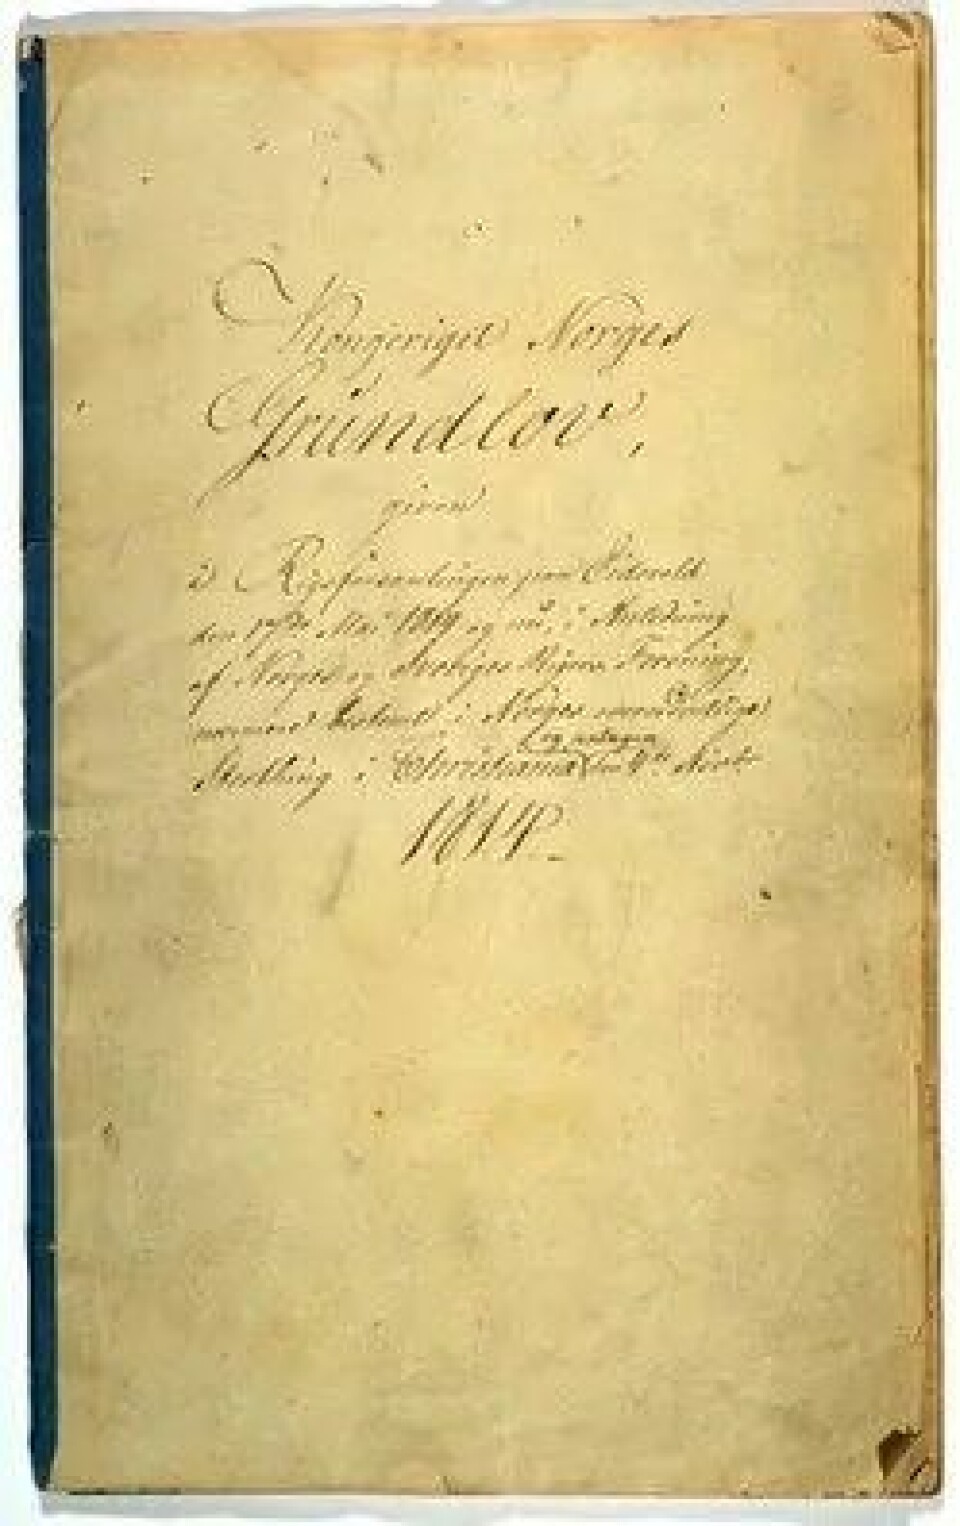 Forsiden av grunnlovens håndskrevne originalen. (Kilde: Wikimedia Commons)